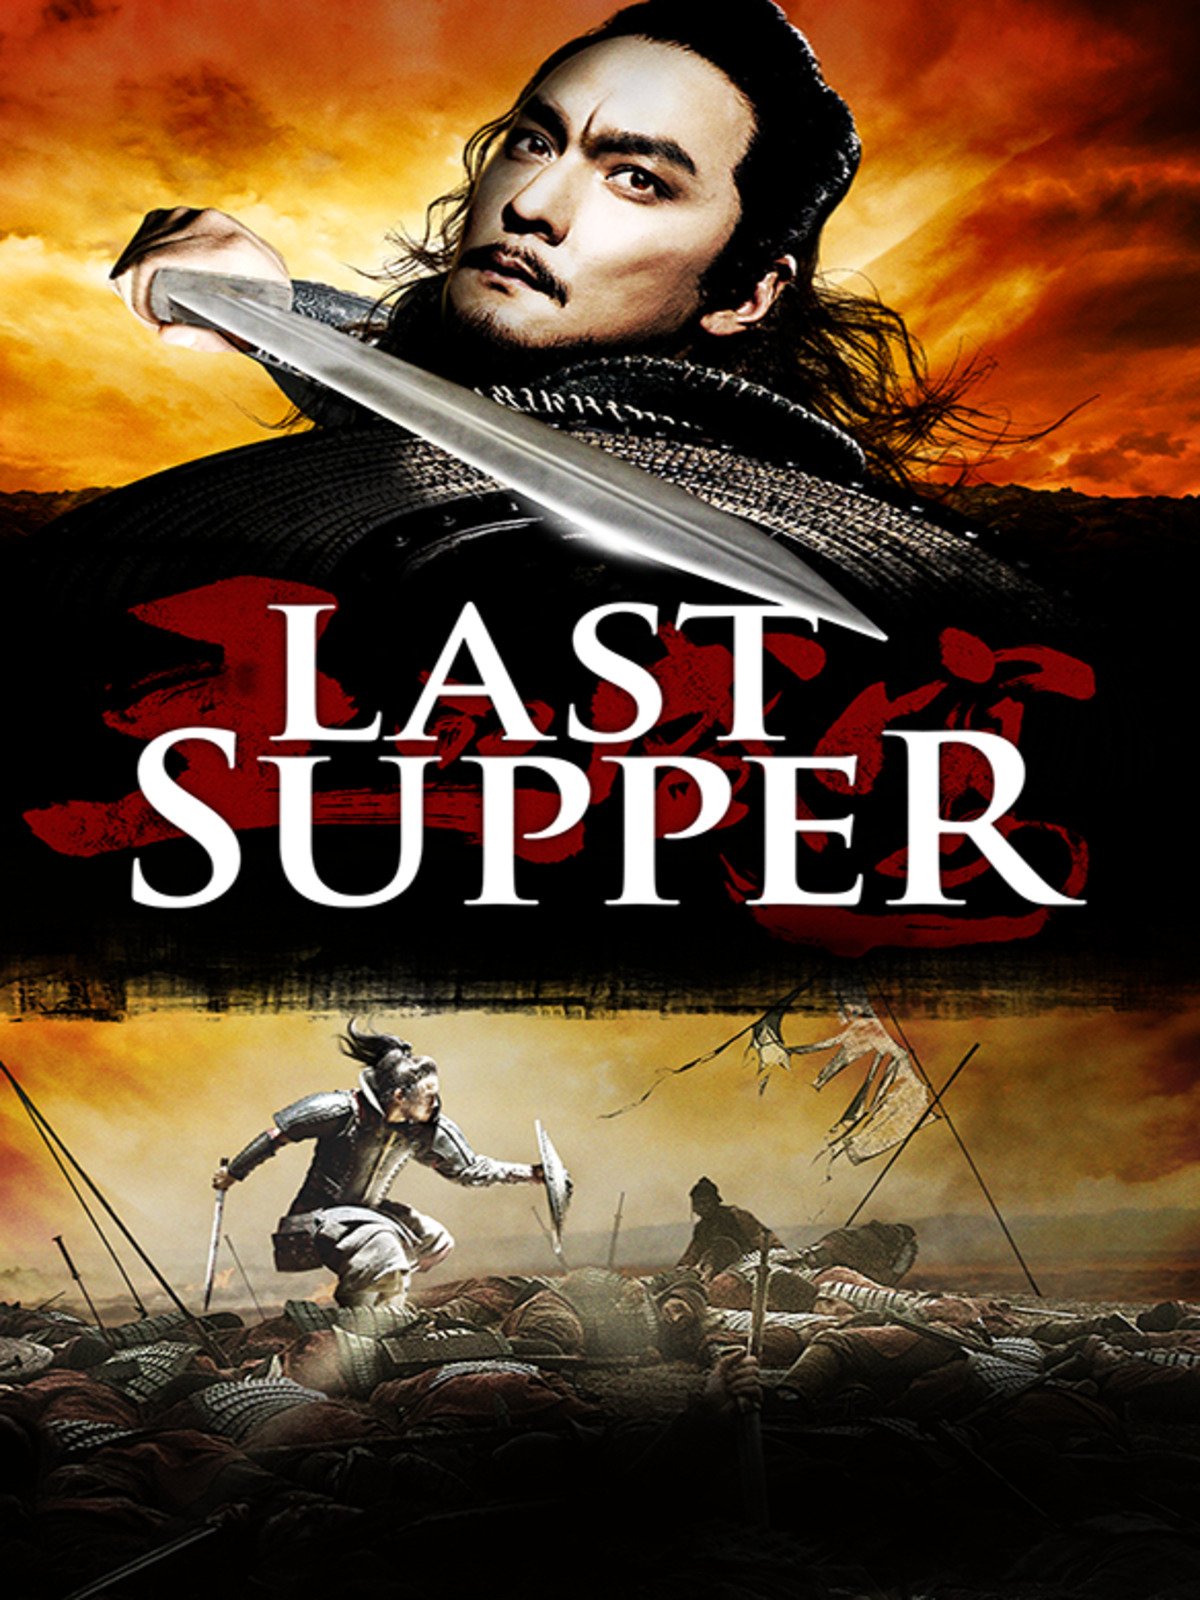 ดูหนังออนไลน์ฟรี ดูหนัง The Last Supper 2013 ฌ้อป๋าอ๋อง มหากาพย์ลำน้ำเลือด 037moviefree